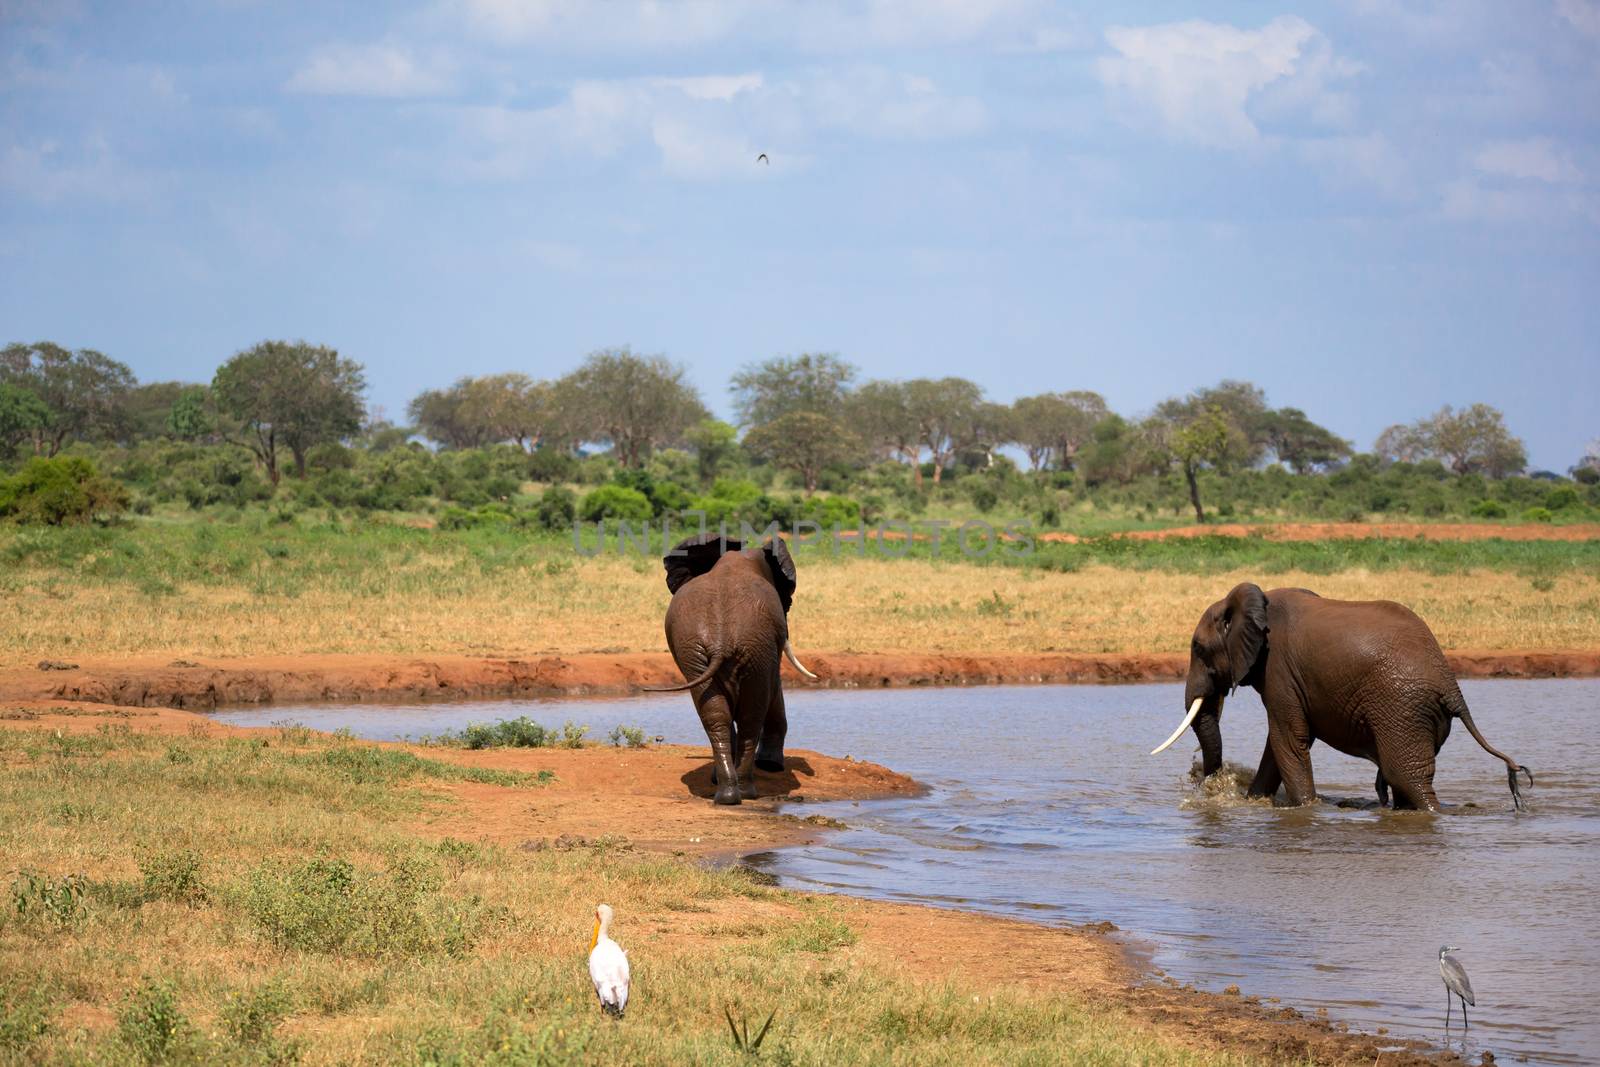 Red elephants on the waterhole in the savannah of Kenya by 25ehaag6